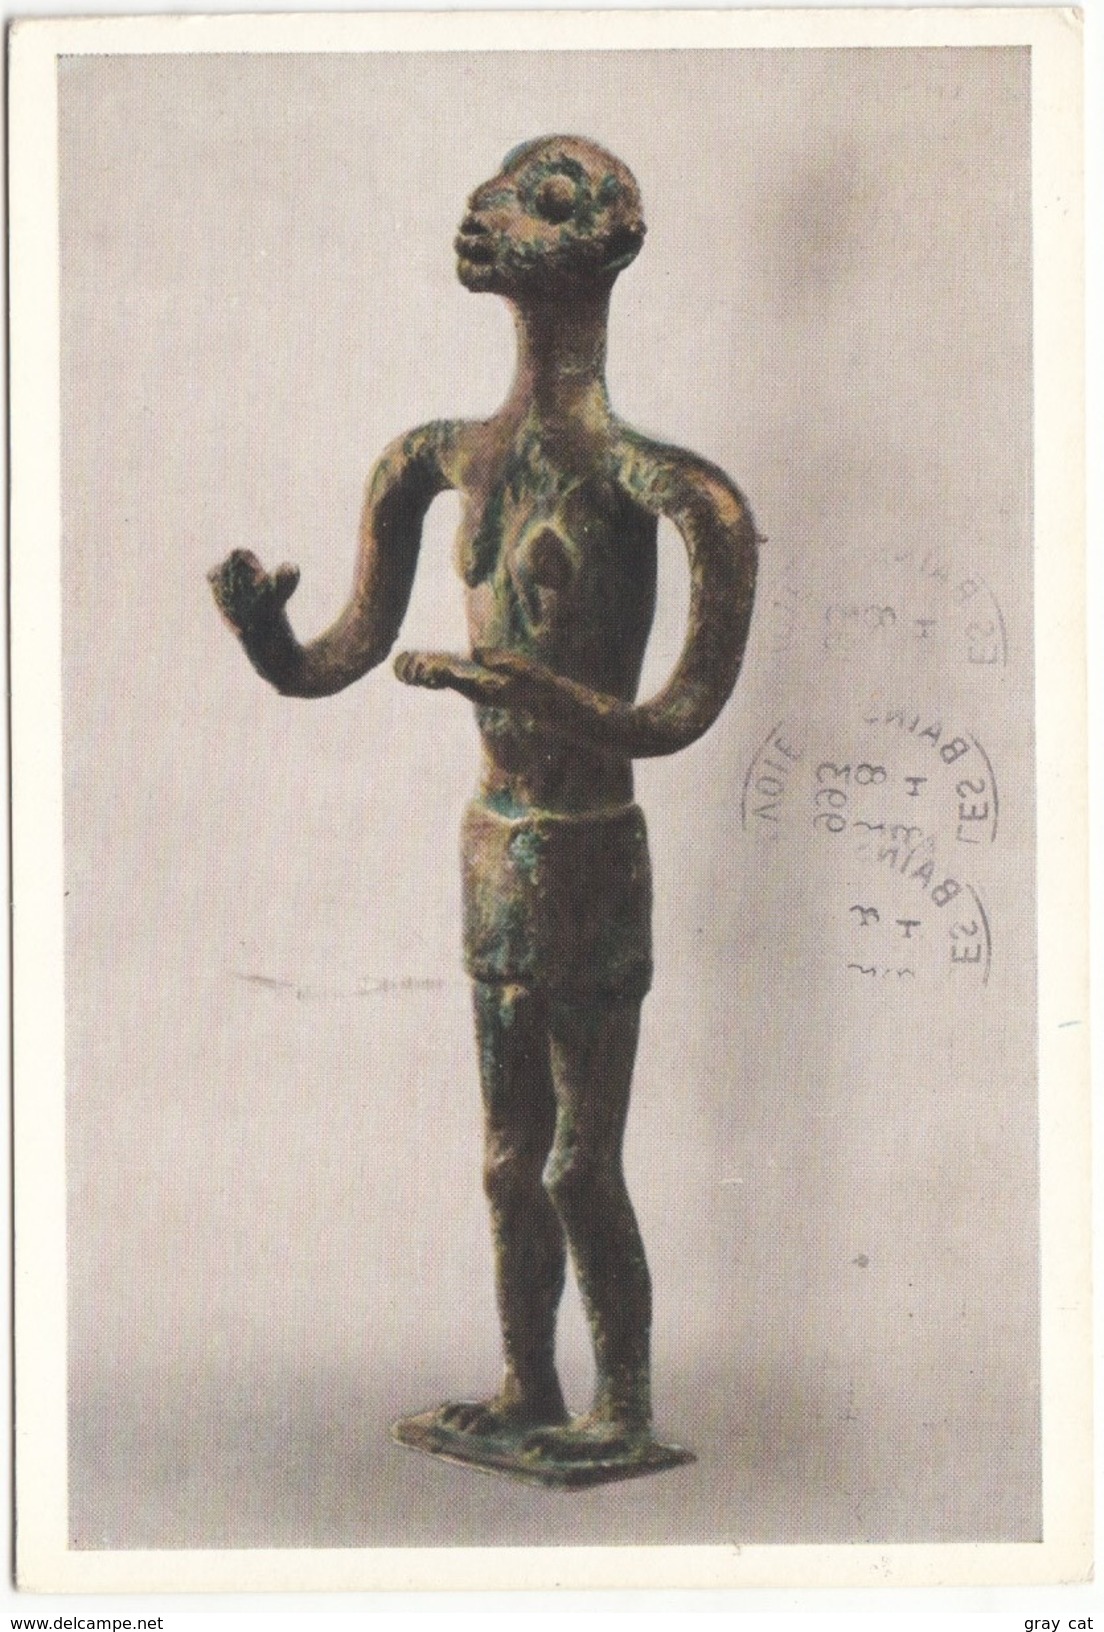 IL GESTICOLANTE, Bronzetto Nuragico, Museo Nazionale Archeologico Di Cagliari, 1993 Used Postcard [19209] - Sculptures